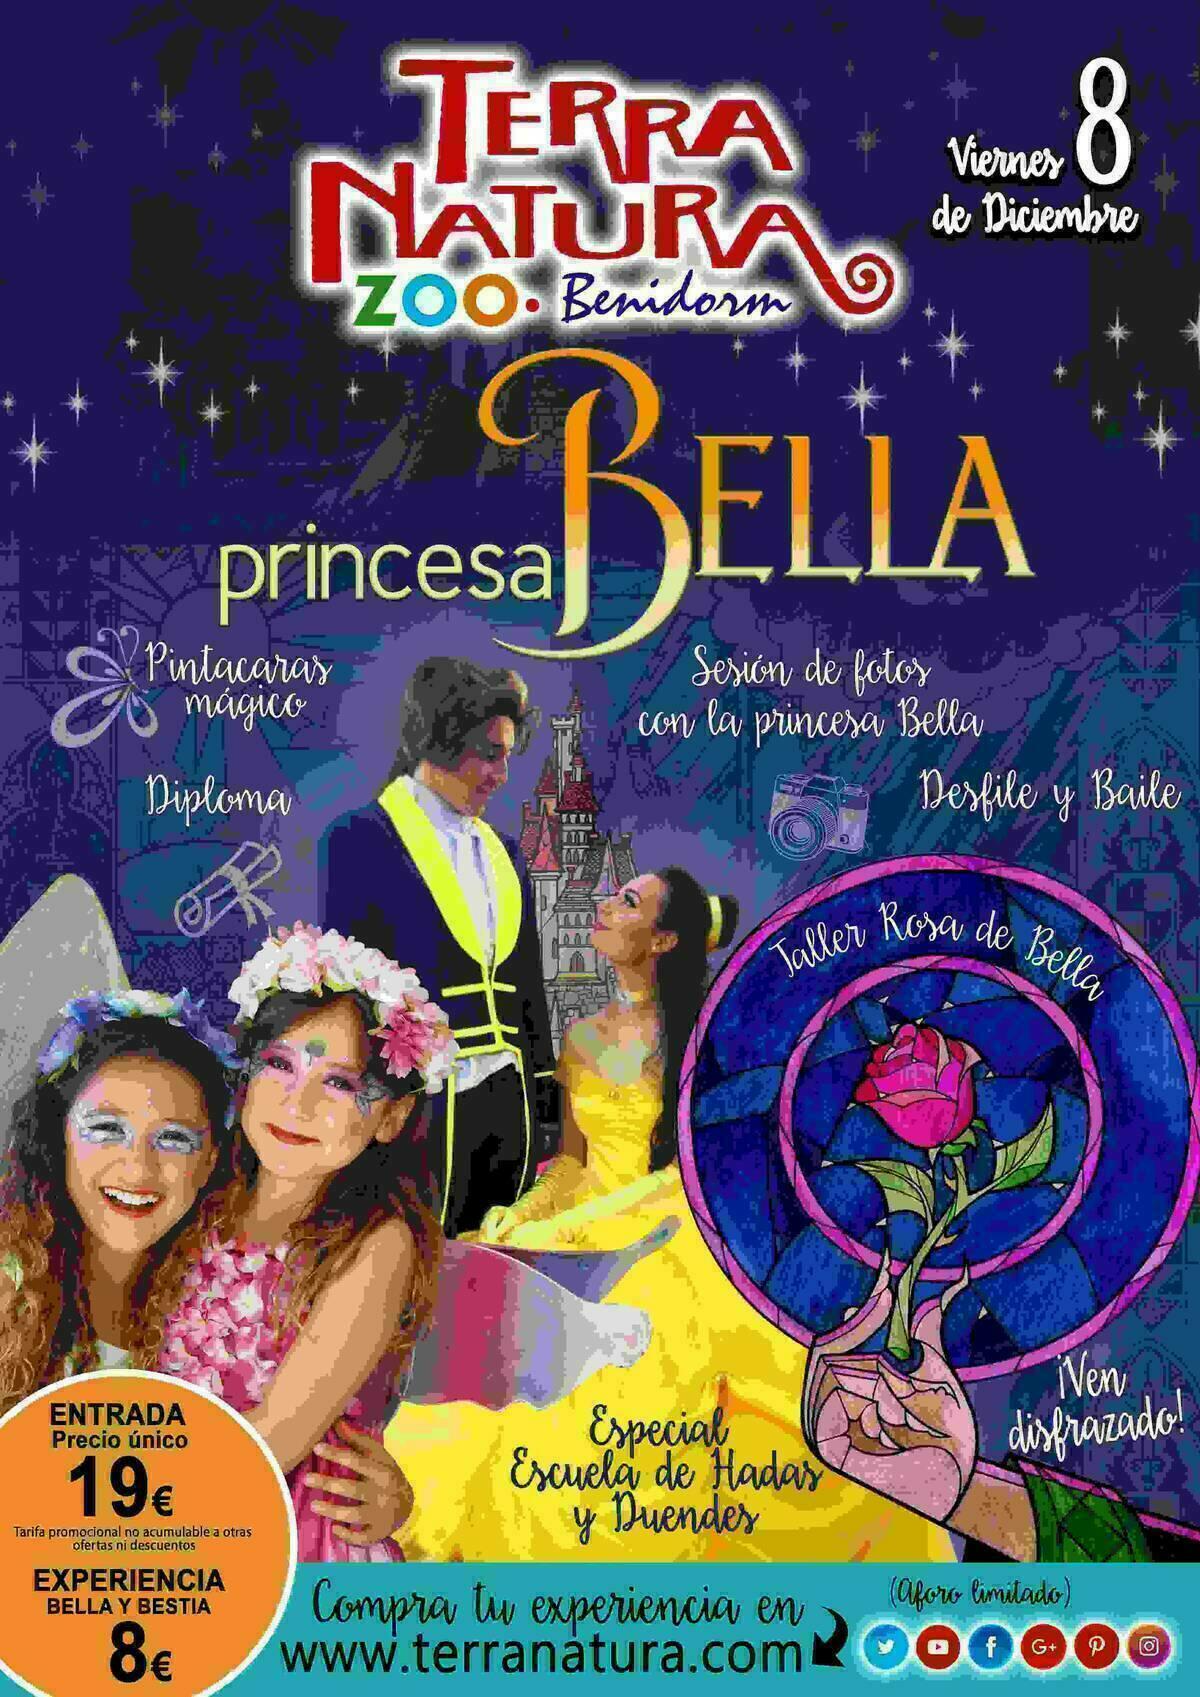 Terra Natura Benidorm recibirá la visita de la princesa Bella y Bestia durante el puente de diciembre